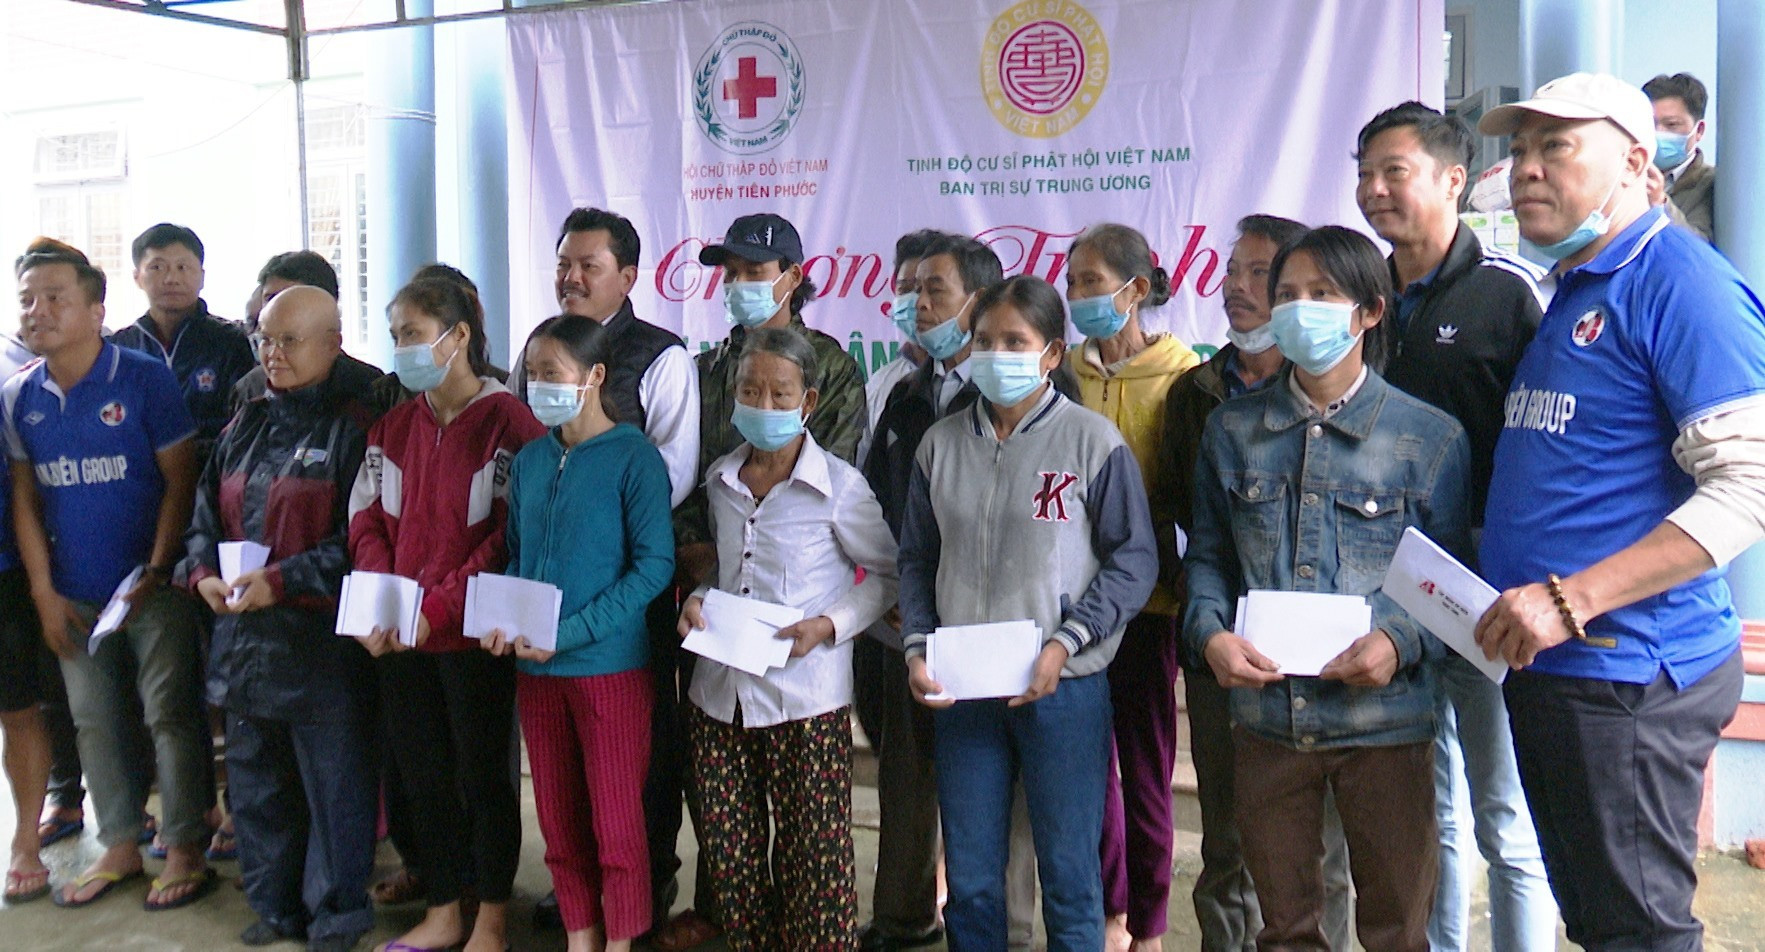 Ban trị sự Tịnh độ Cư sĩ Phật hội Việt Nam hỗ trợ các hộ bị thiệt hại do mưa bão tại Tiên Phước. Ảnh: N.H